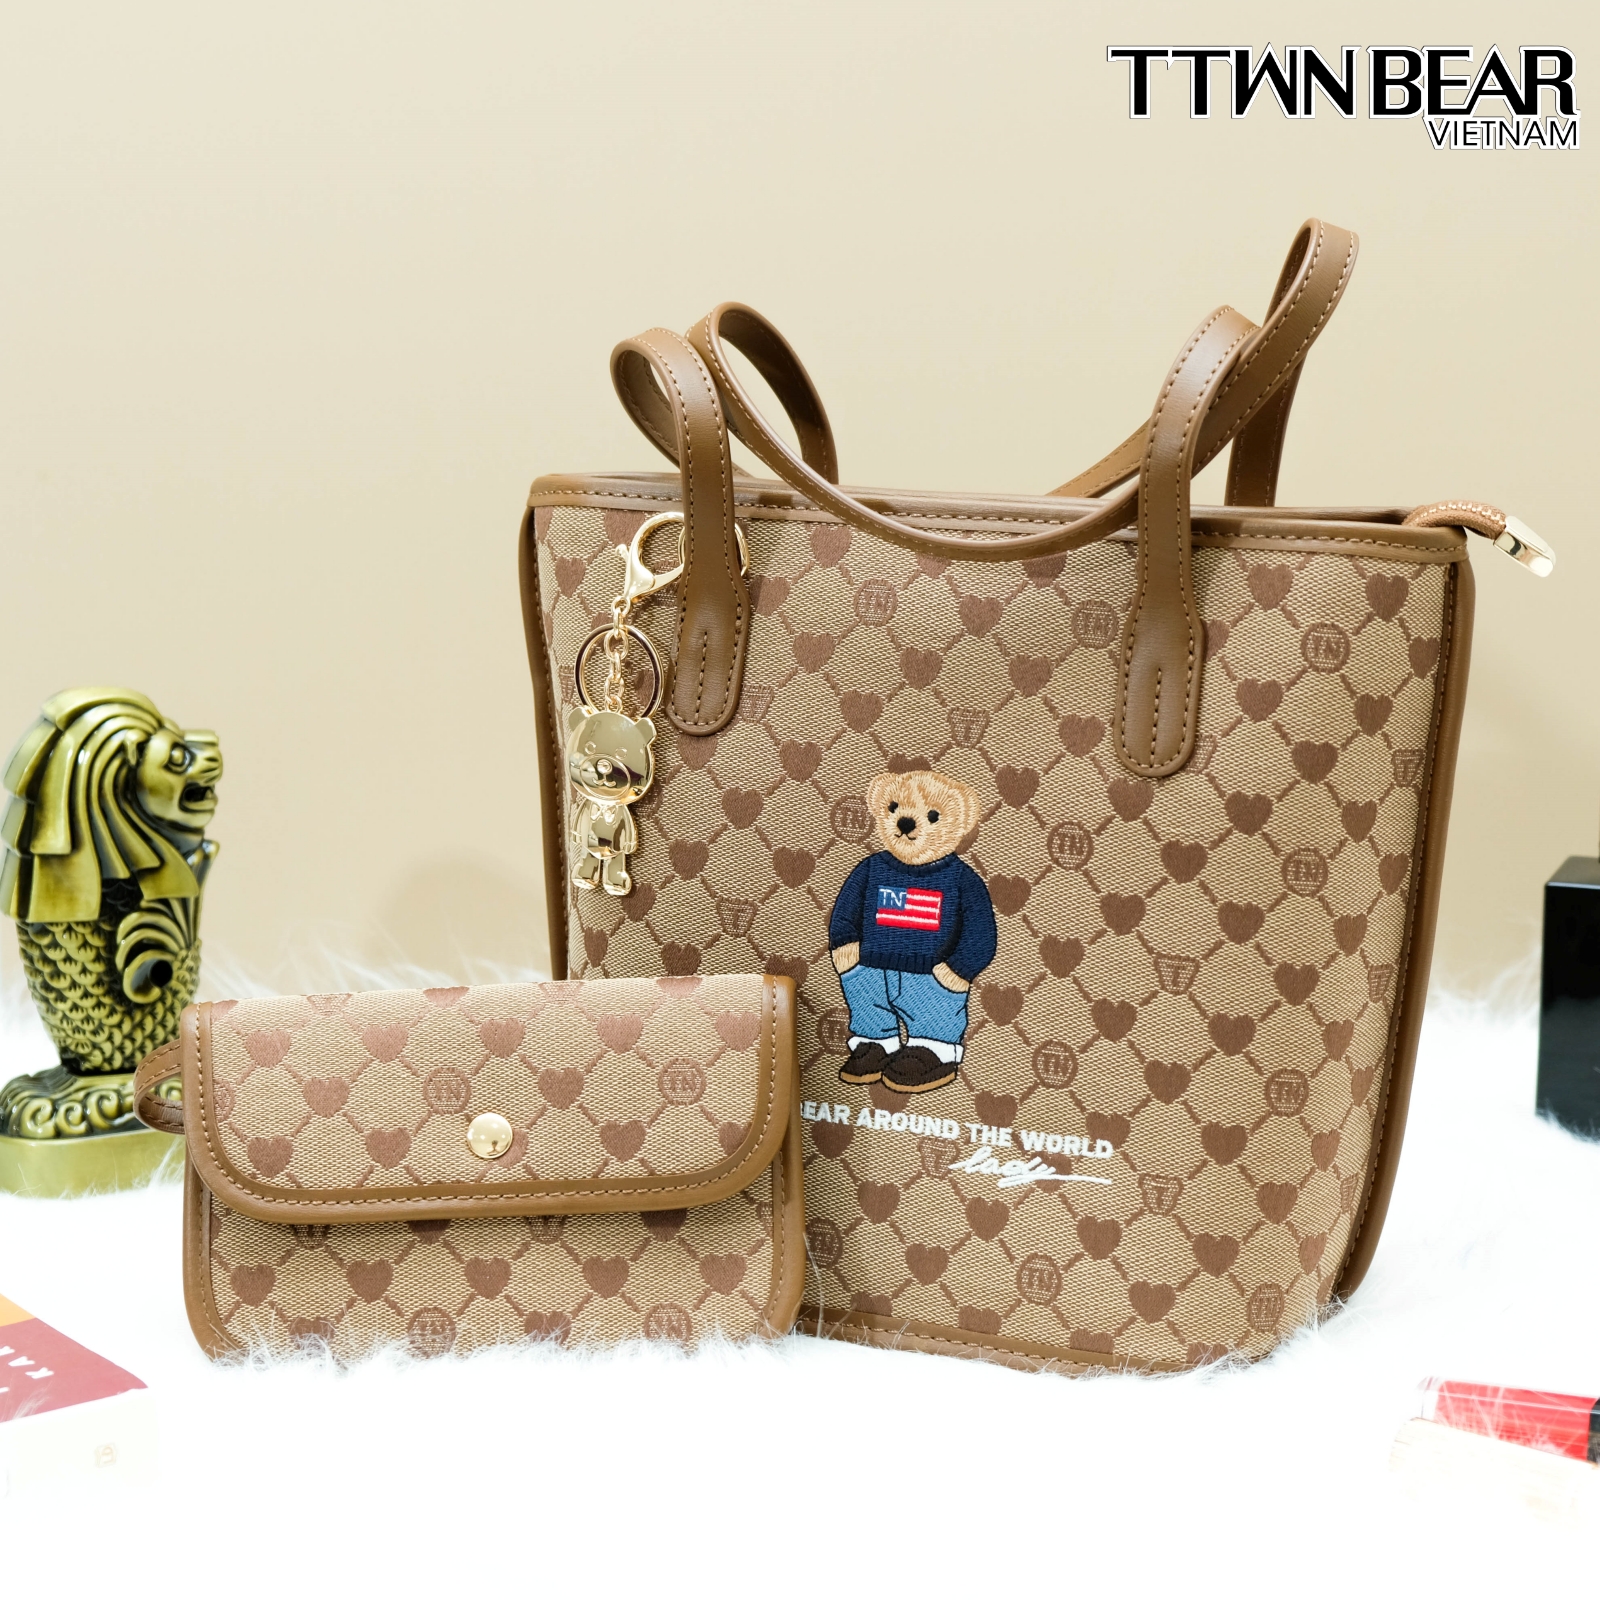 Túi xách nữ TN3389 đeo chéo thời trang công sở đi học đi chơi TTWN BEAR da PVC cao cấp